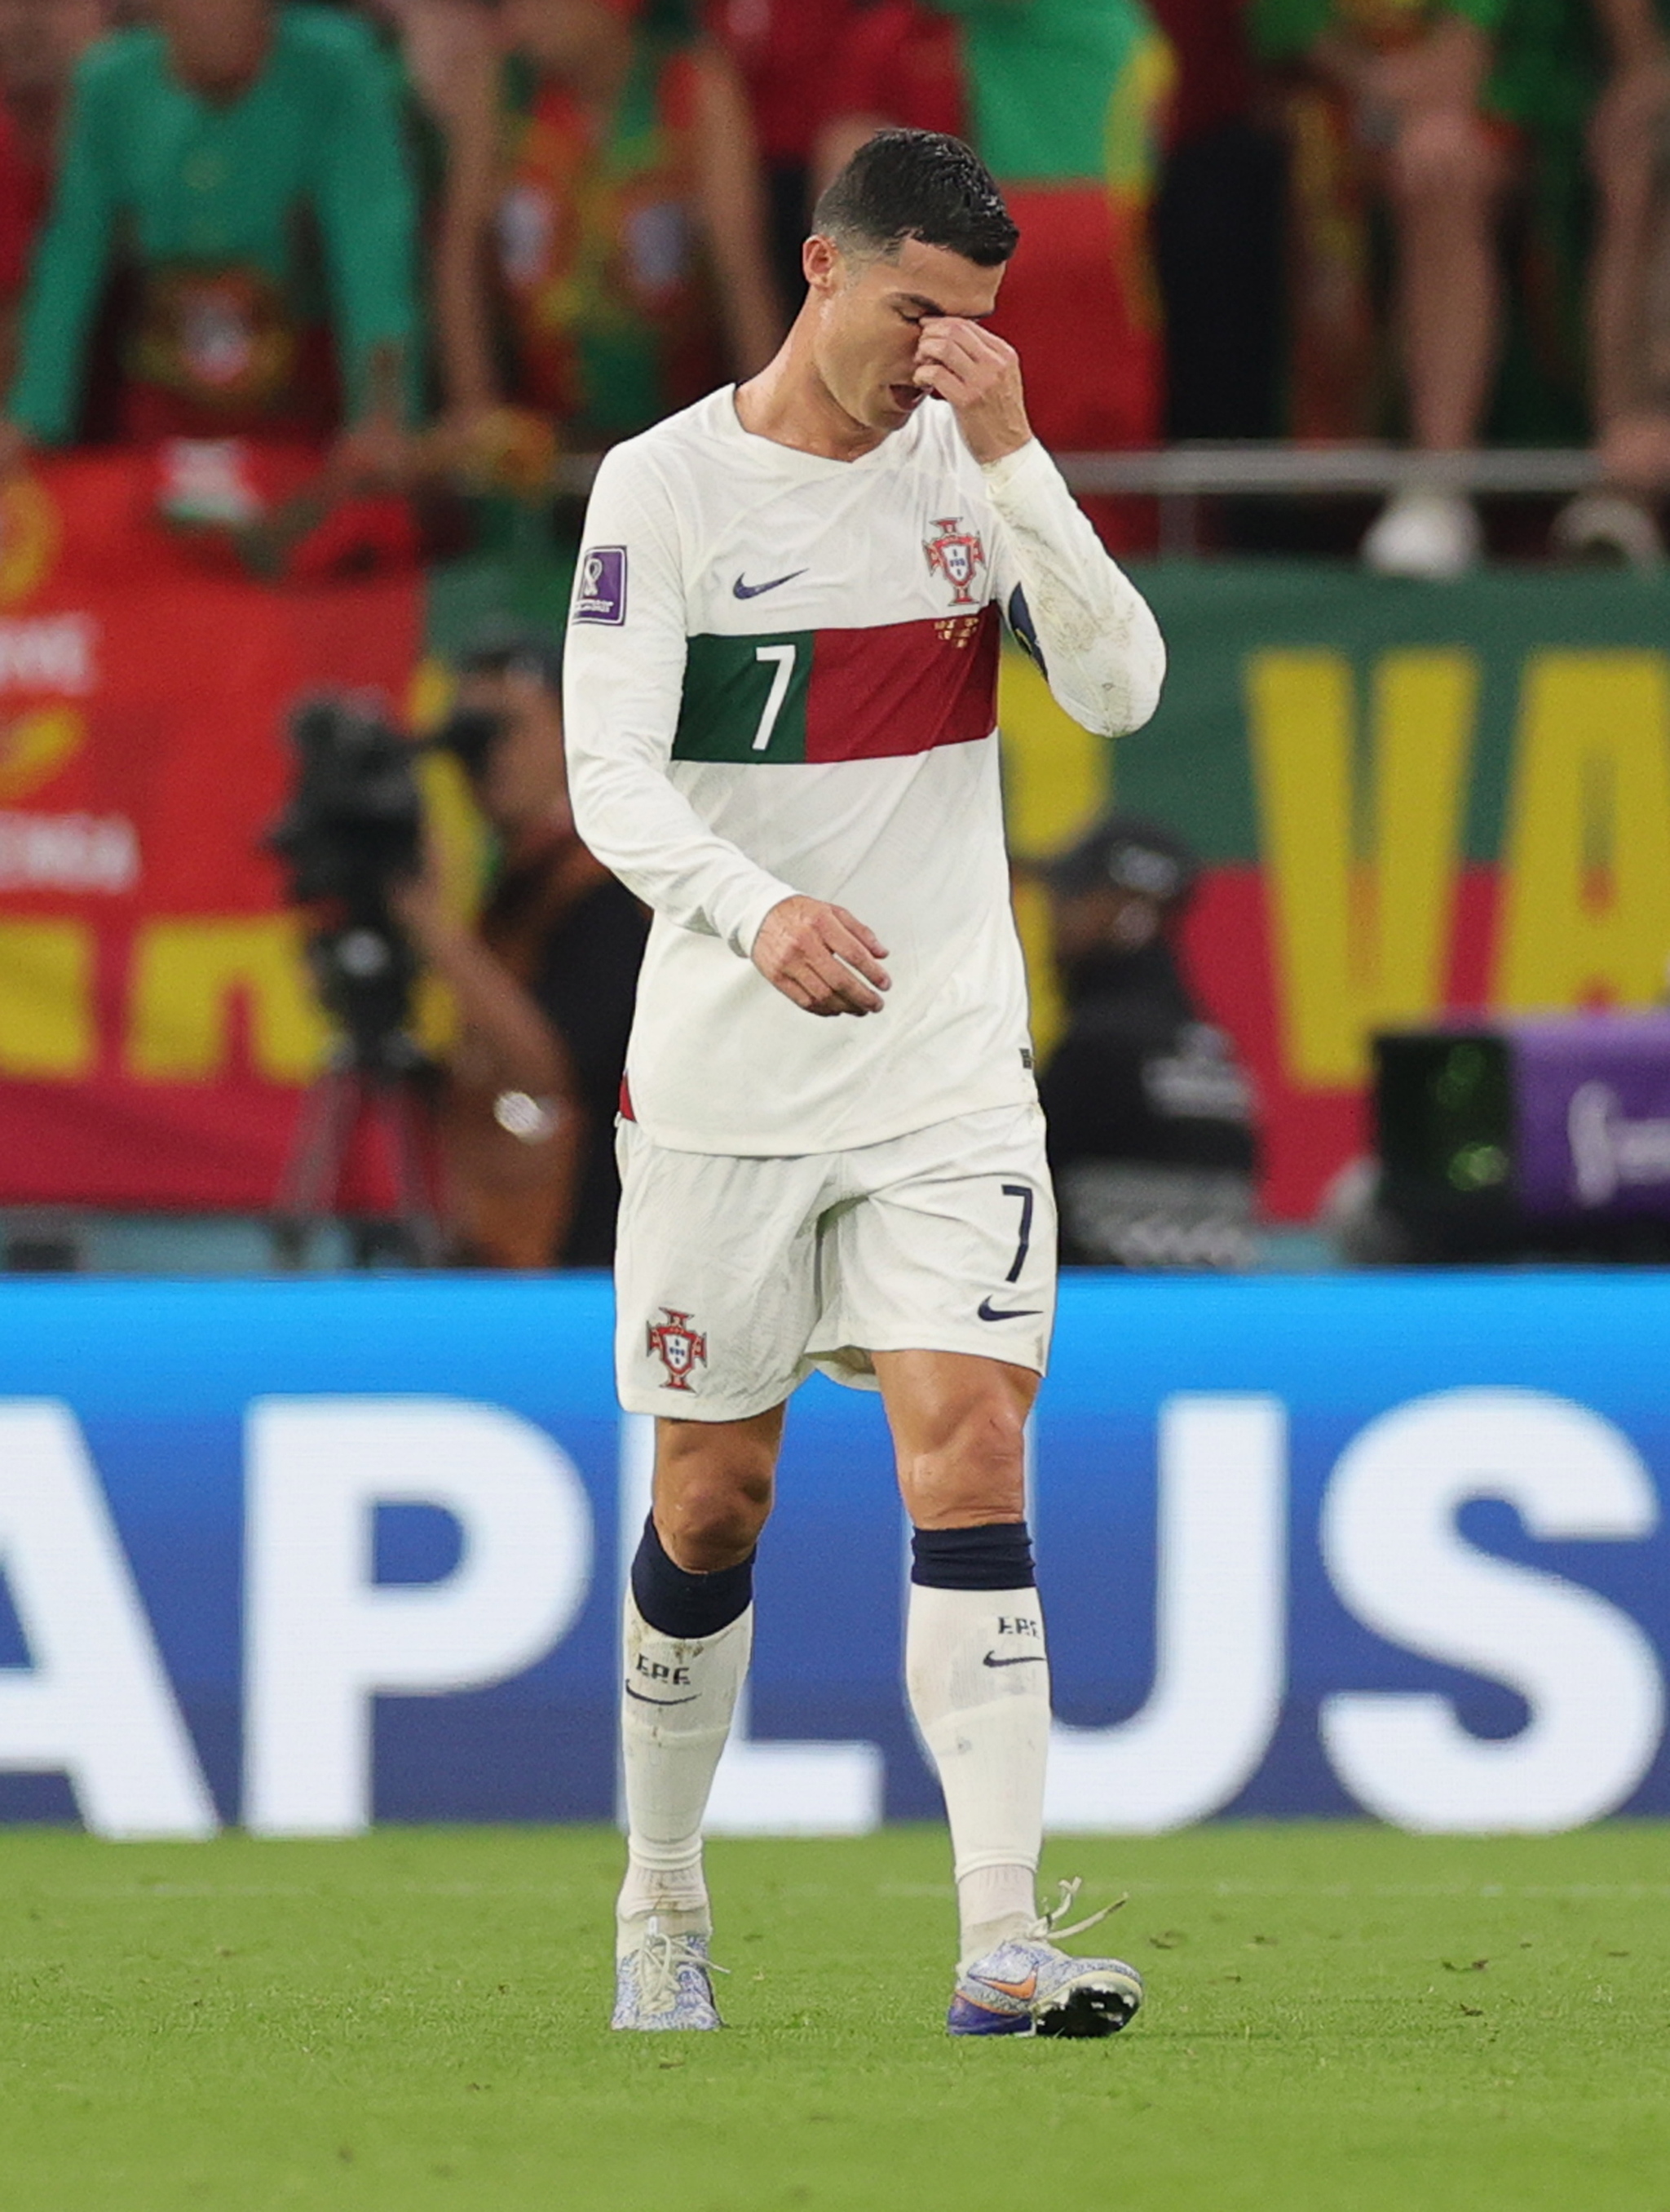 Hình ảnh Ronaldo khóc tại World Cup 2024 sẽ là một cảnh tượng cảm xúc đầy nghẹn ngào. Chắc chắn sẽ có rất nhiều điều đáng để chia sẻ và phân tích về cảm xúc của siêu sao này. Cùng đón xem nhé!